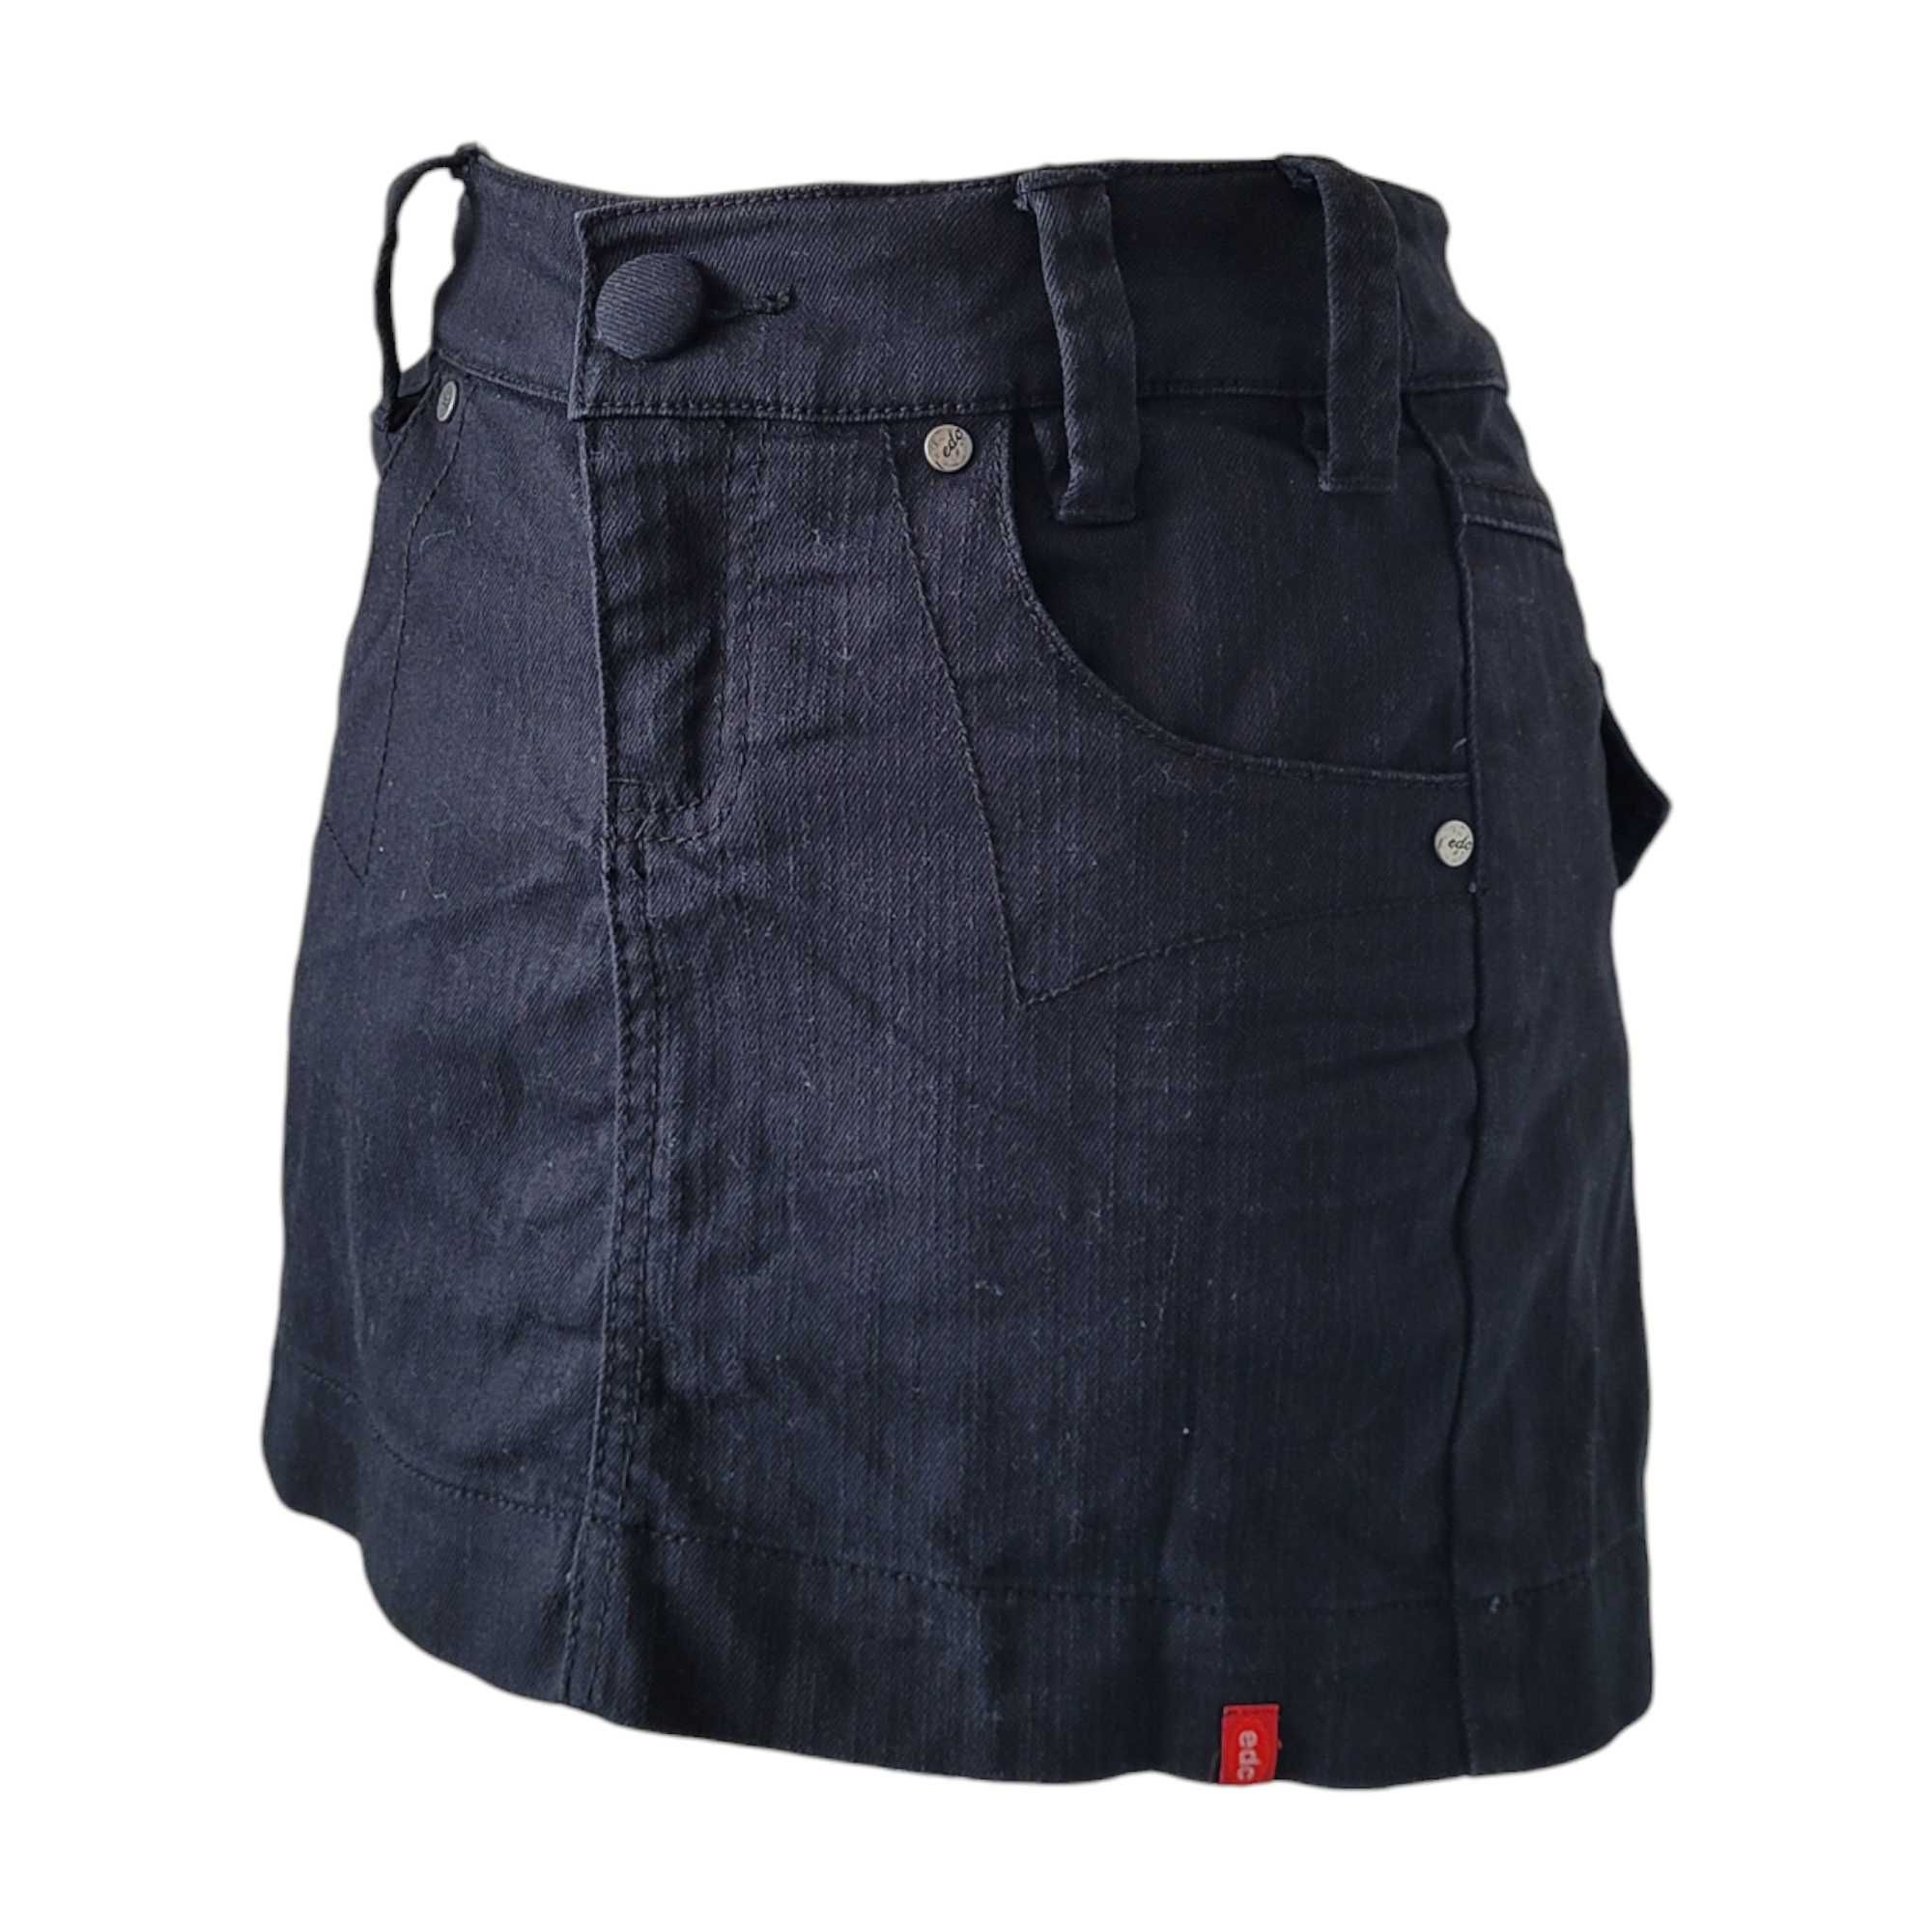 Czarna krótka jeansowa spódnica mini fałdy M japan style kawaii plisy